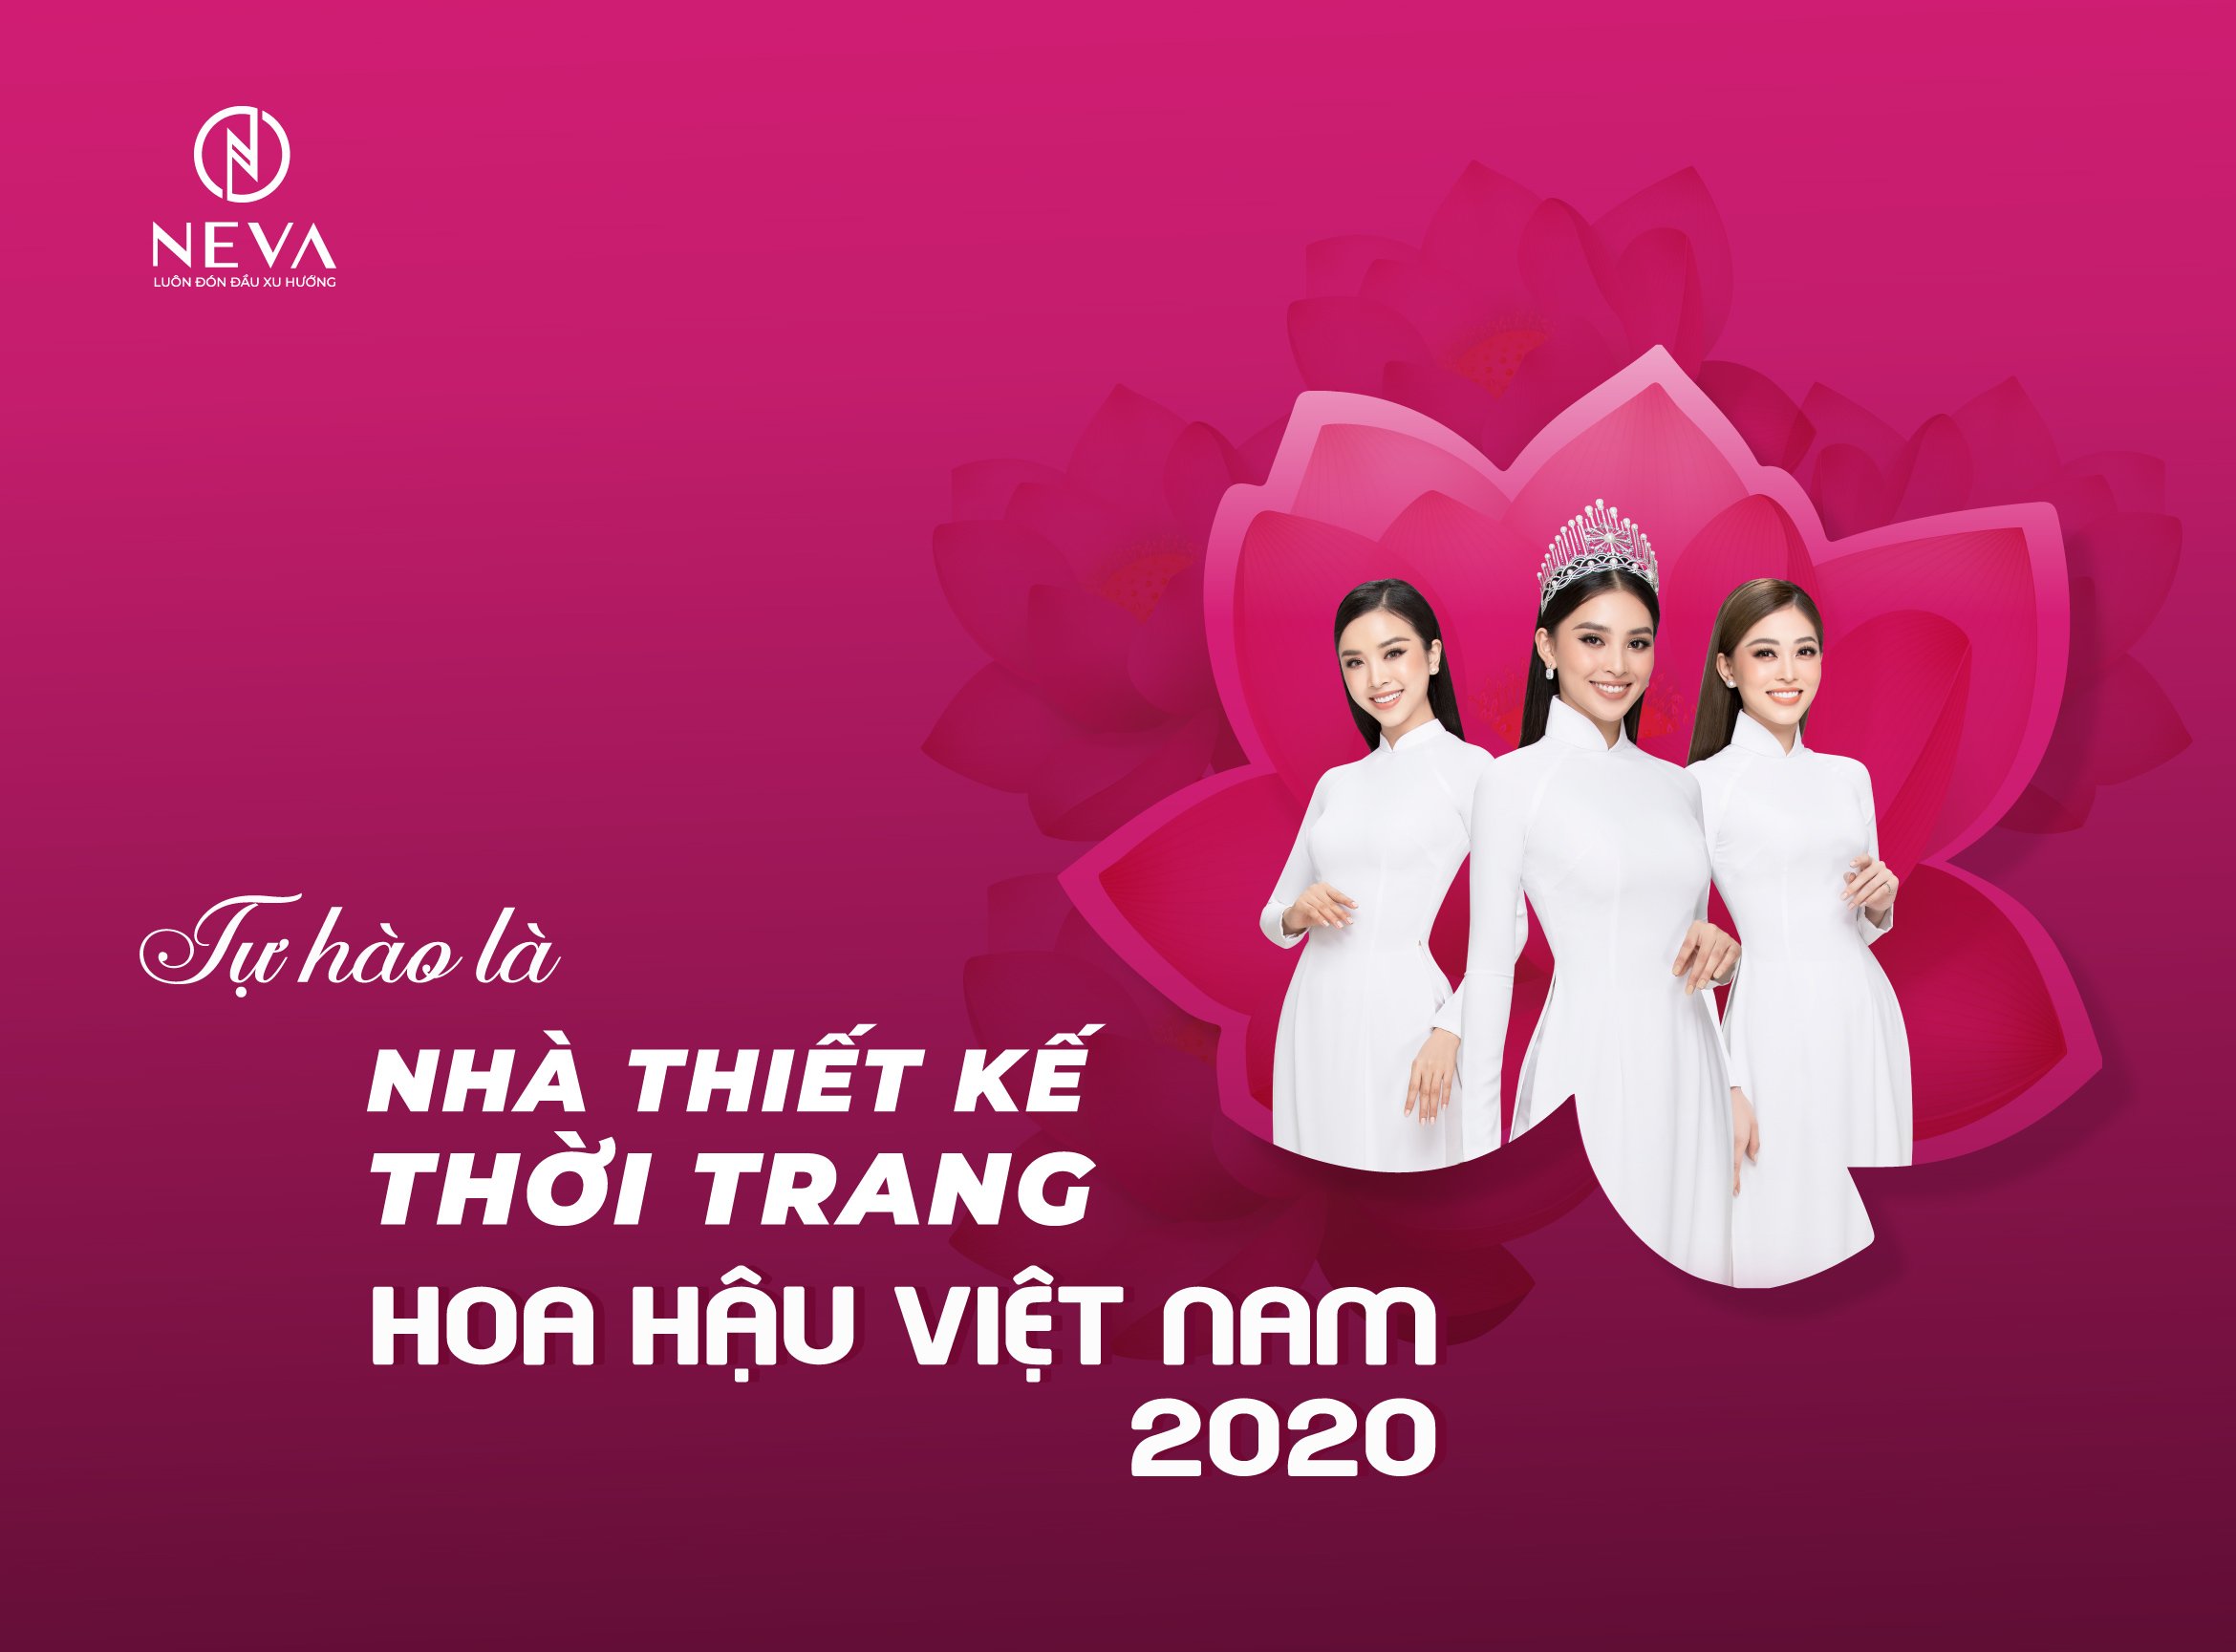 EVA tự hào là nhà thiết kế thời trang Hoa hậu Việt Nam 2020